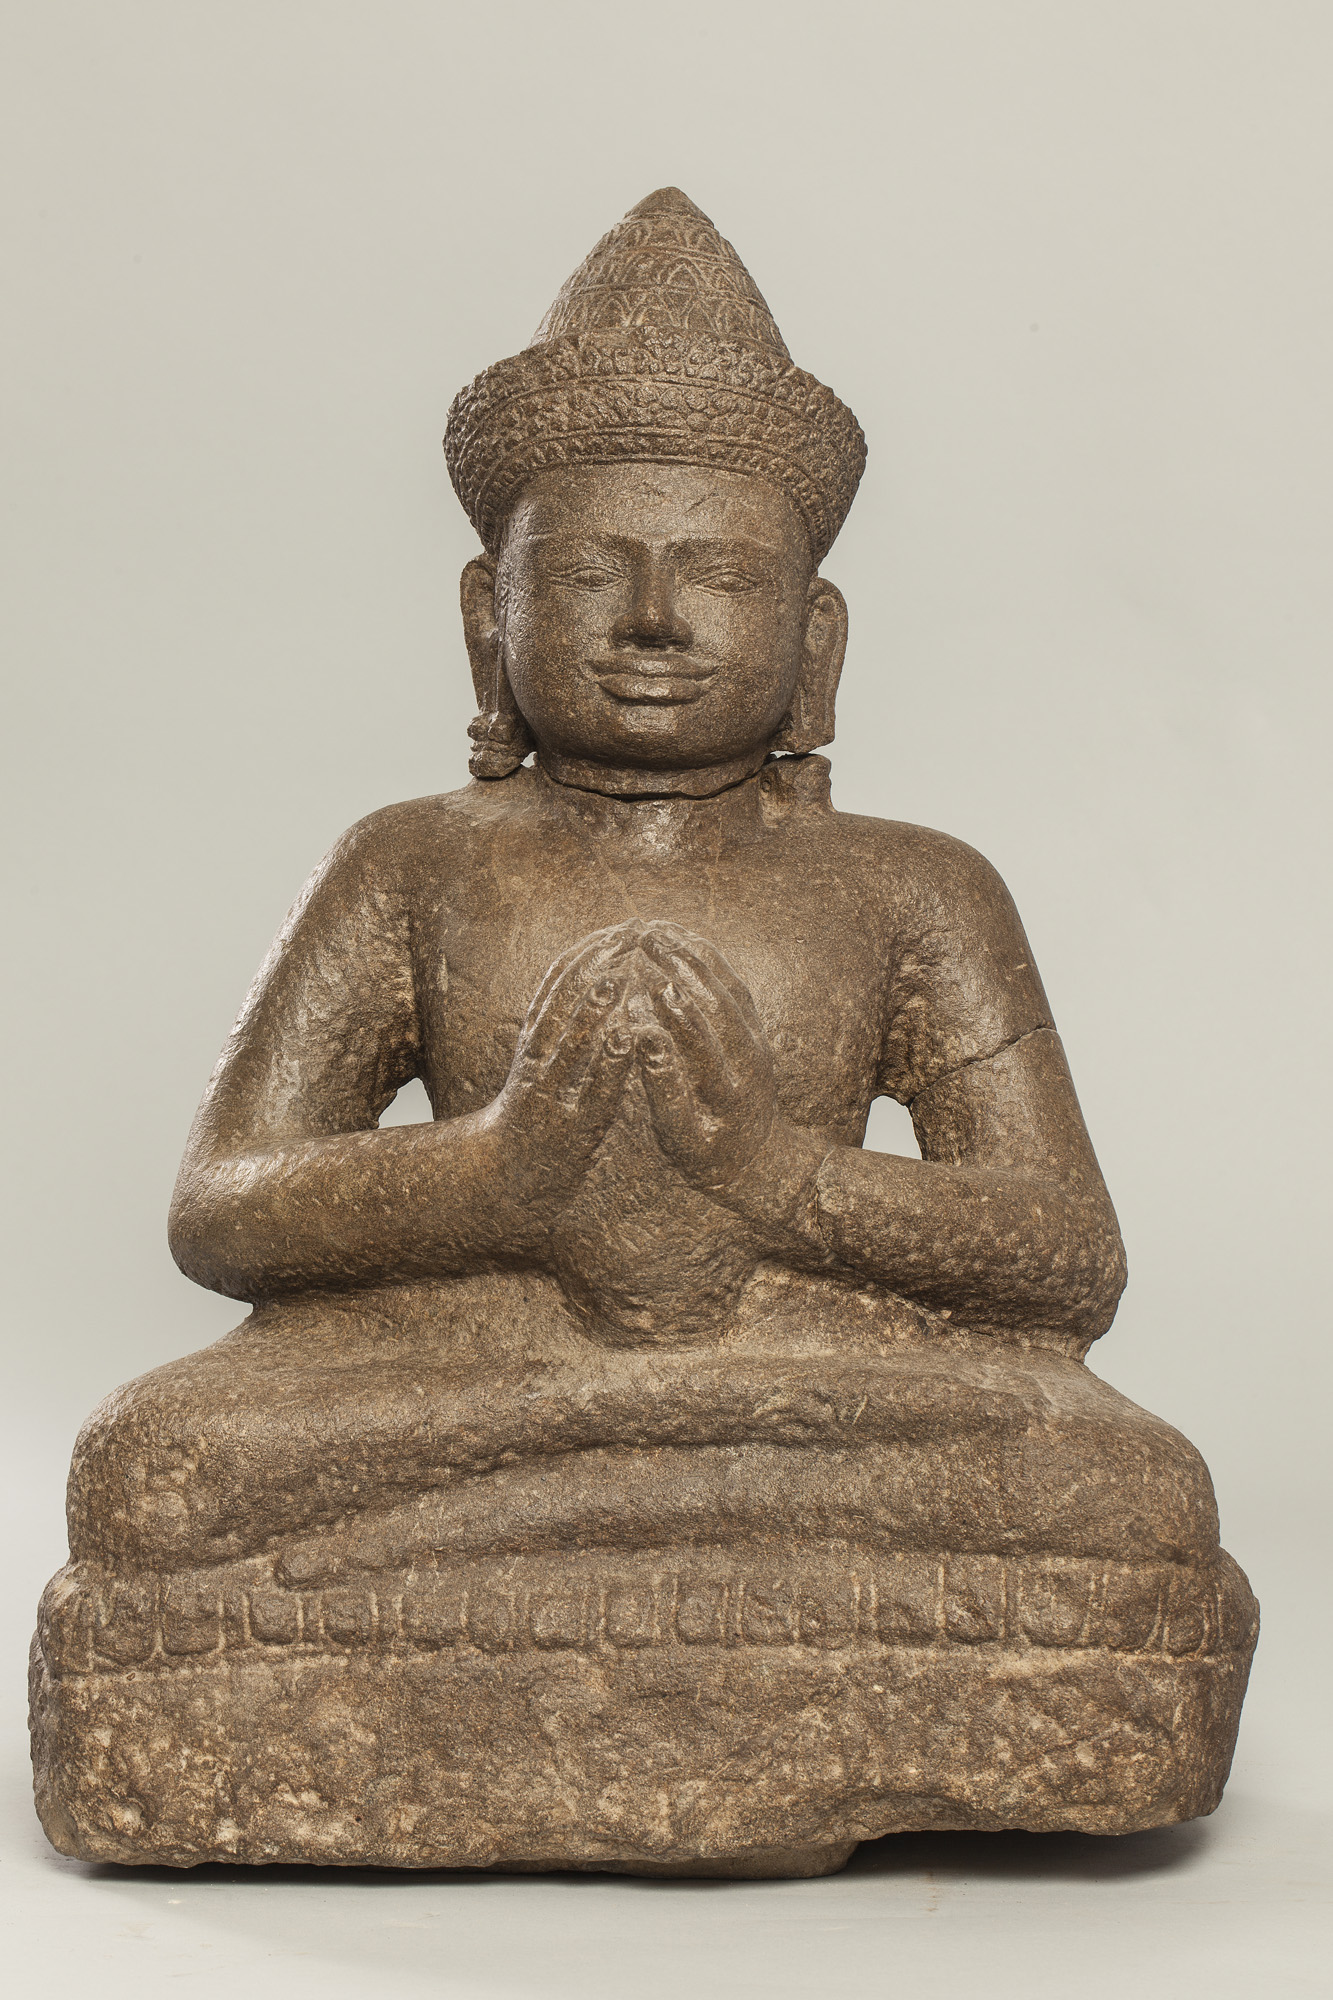 Vishnu assis en dianasana, les mains jointes tenant une offrande, coiffé d’un diadème filmant